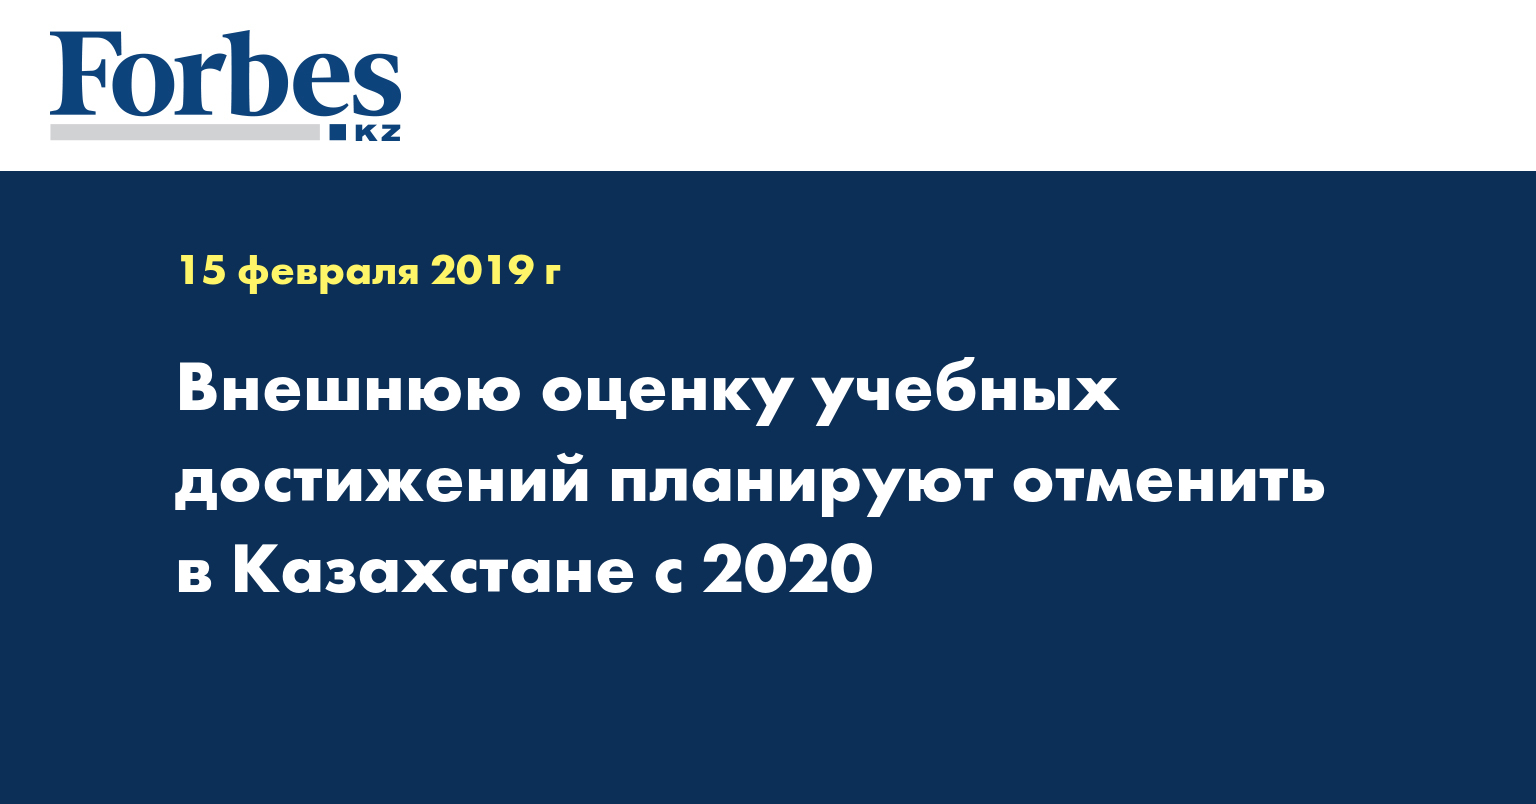 Внешнюю оценку учебных достижений планируют отменить в Казахстане с 2020